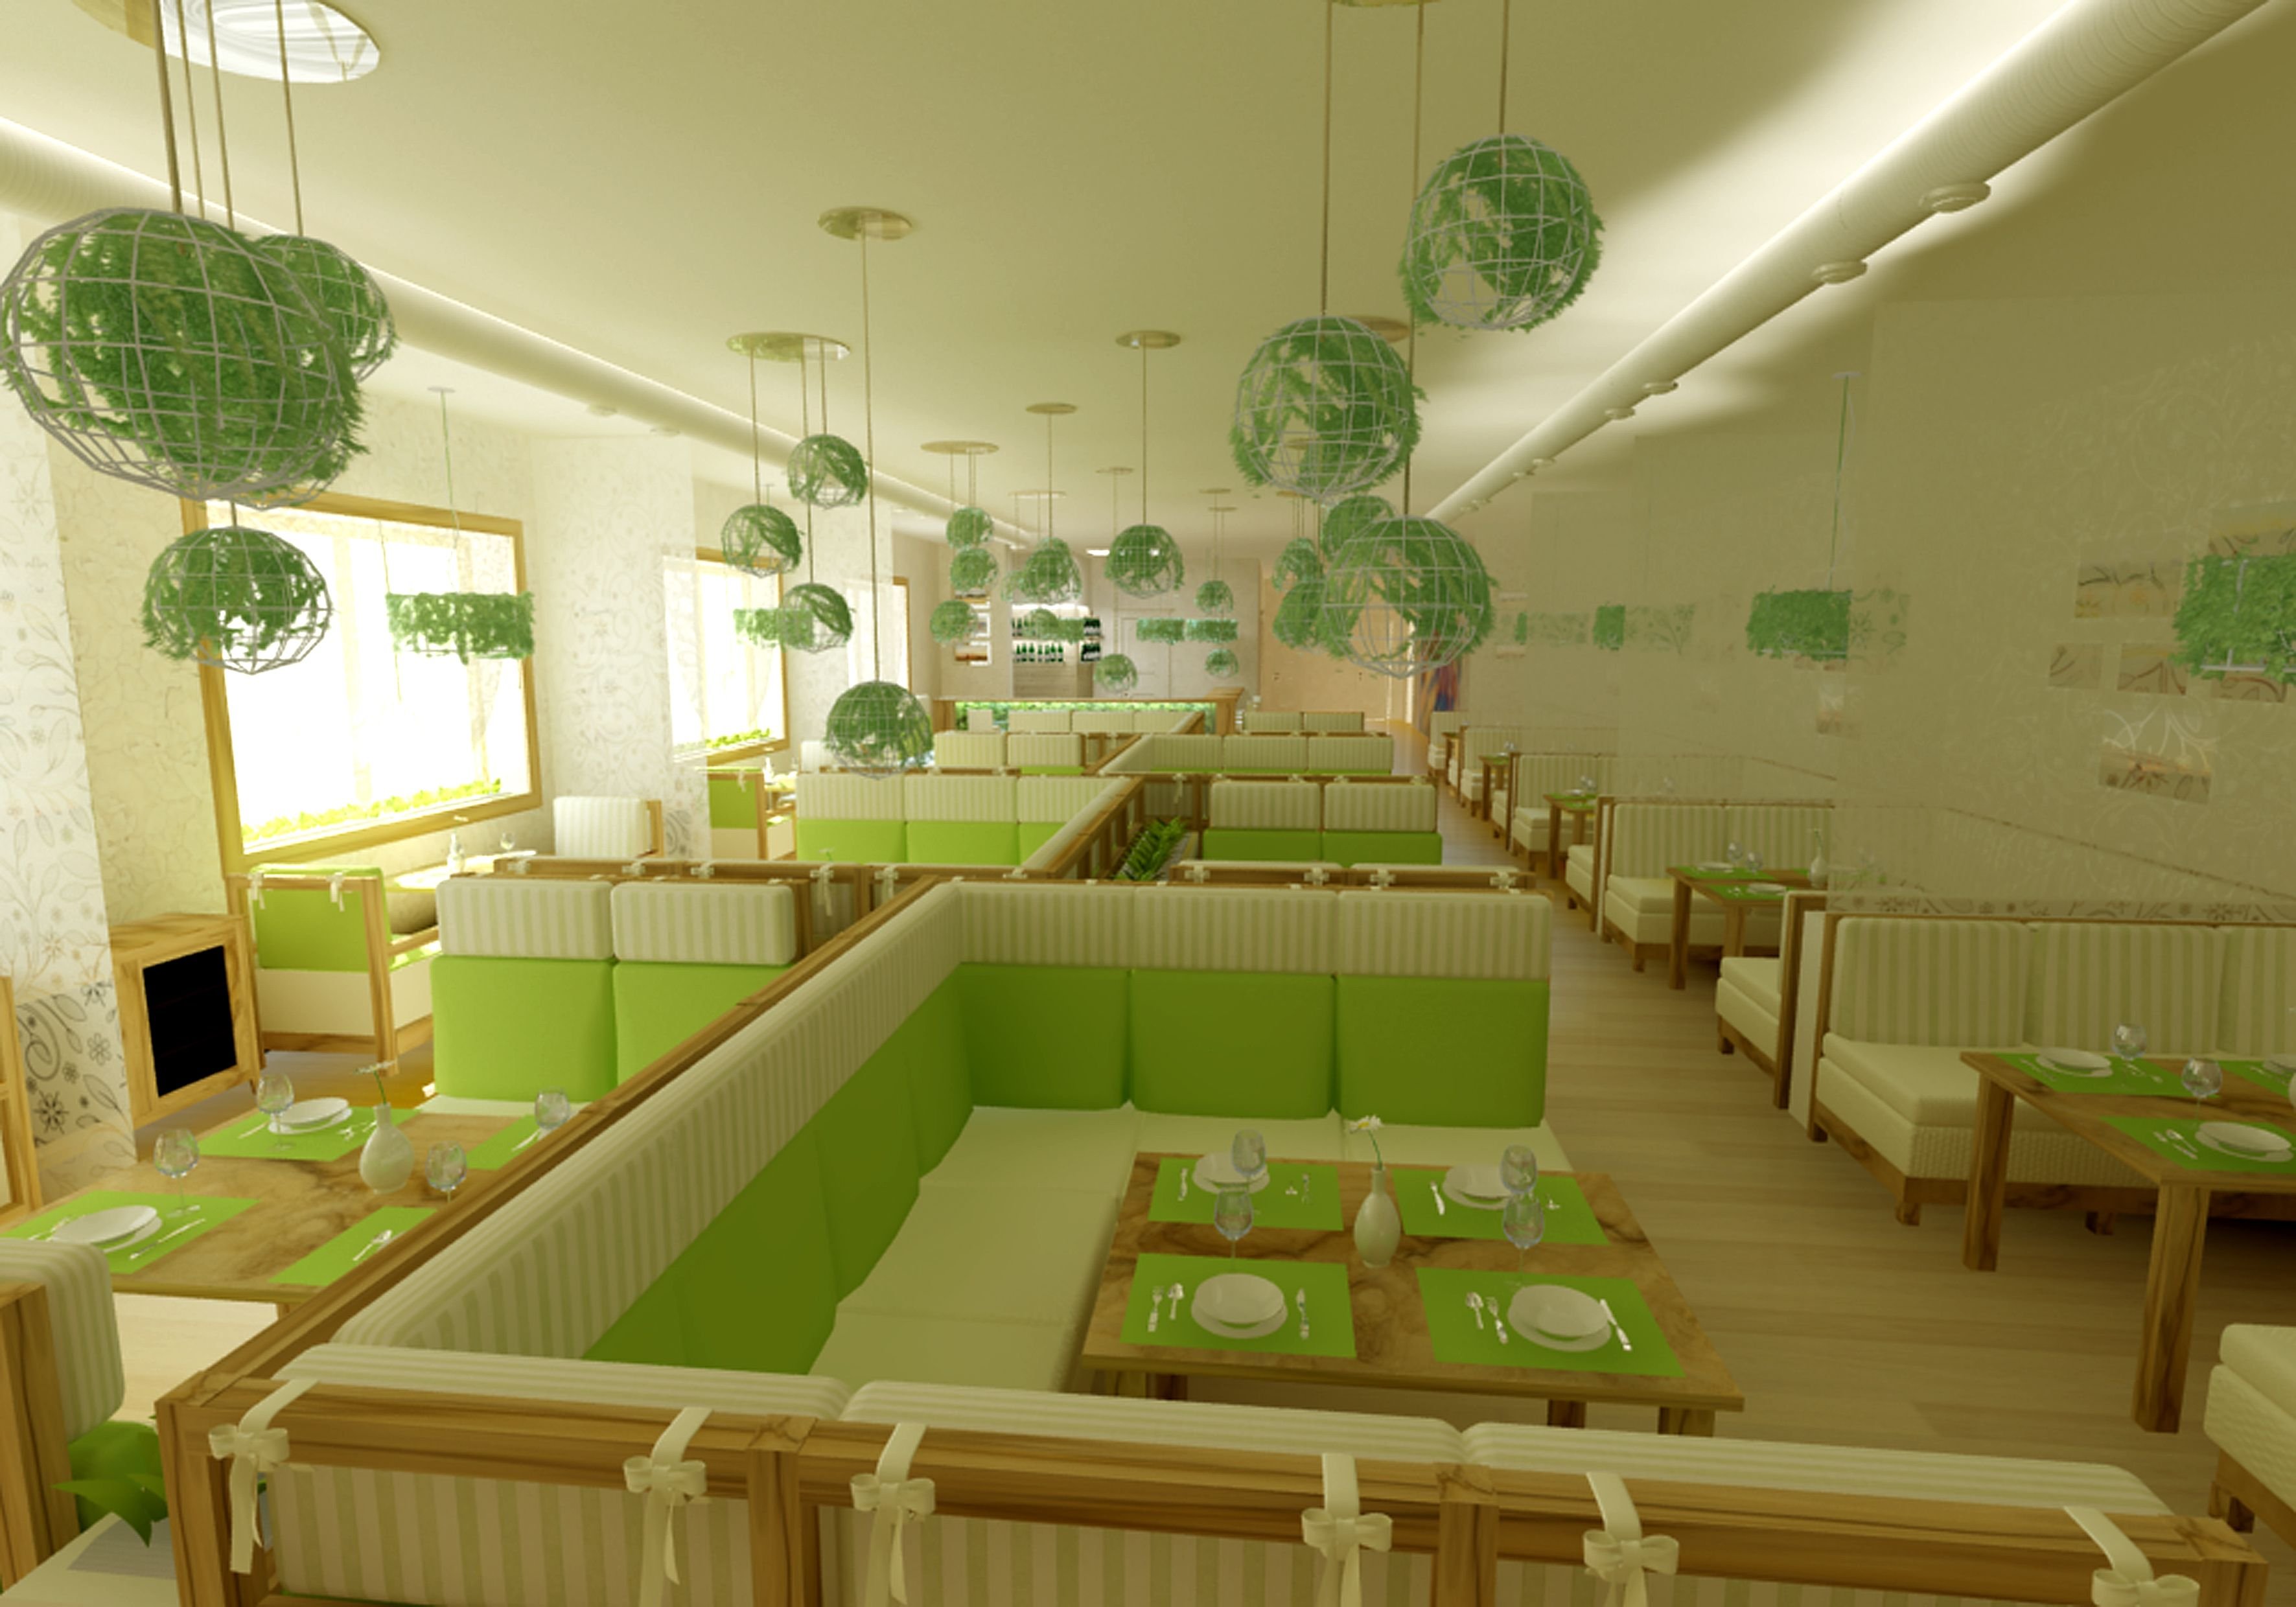 Кафе зеленая зона. Интерьер кафе в зеленых тонах. Кафе в зеленом цвете. Ресторан в зеленых тонах. Кафе в бежево зеленых тонах.